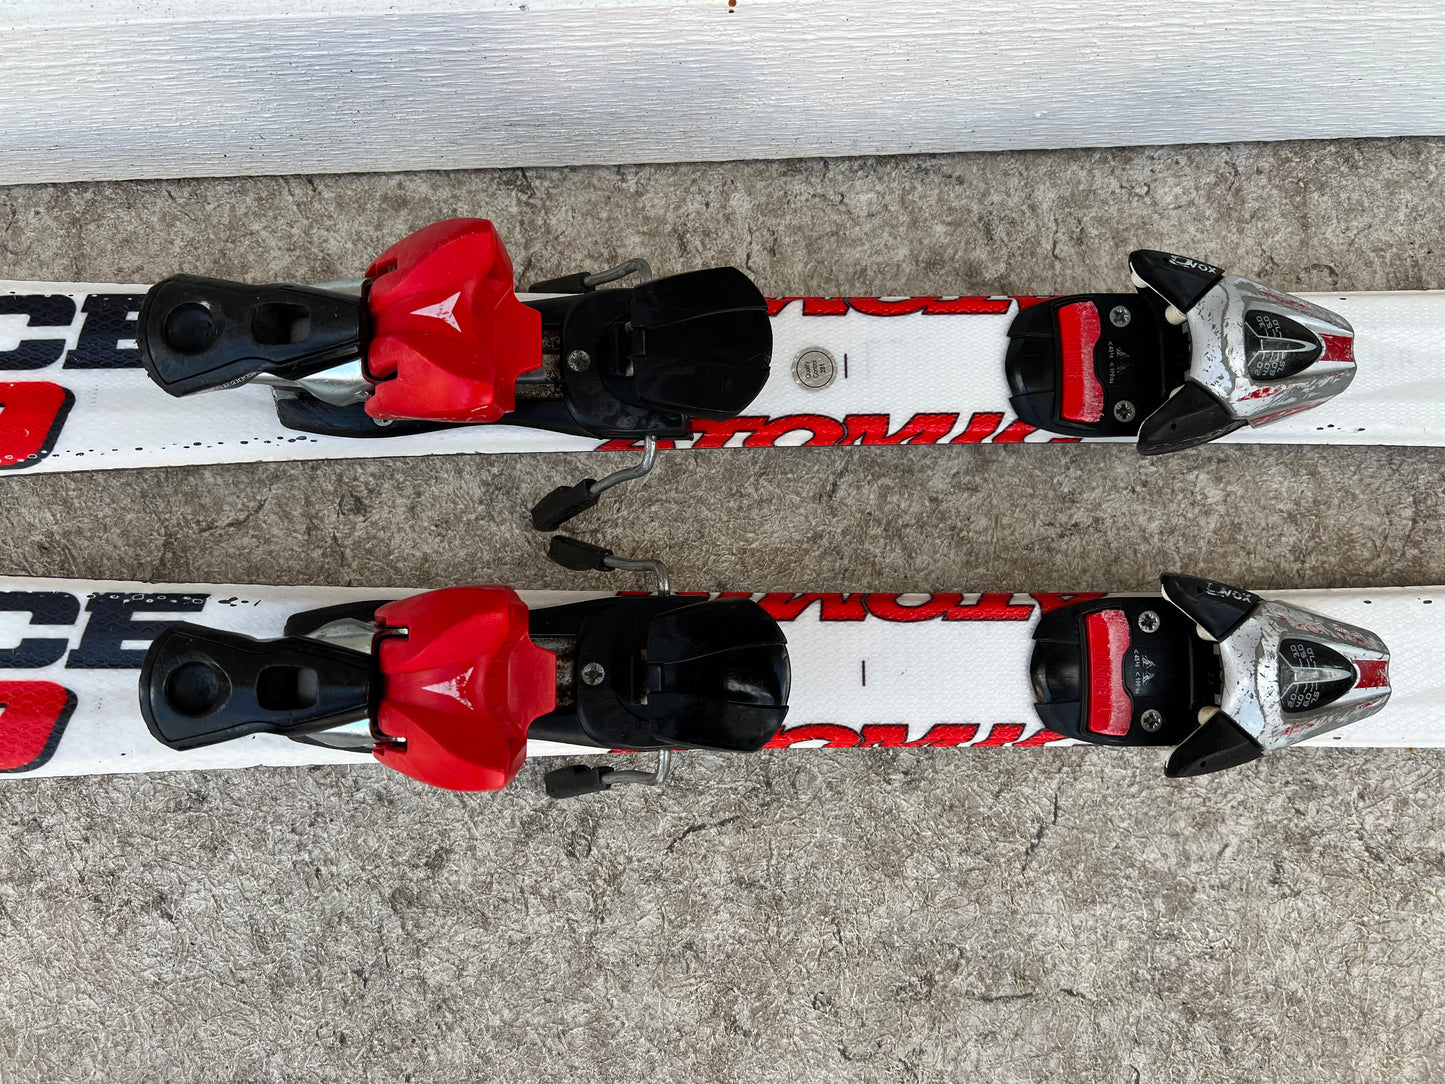 Ski 120 Atomic Race Parabolic Red Black White With Bindings